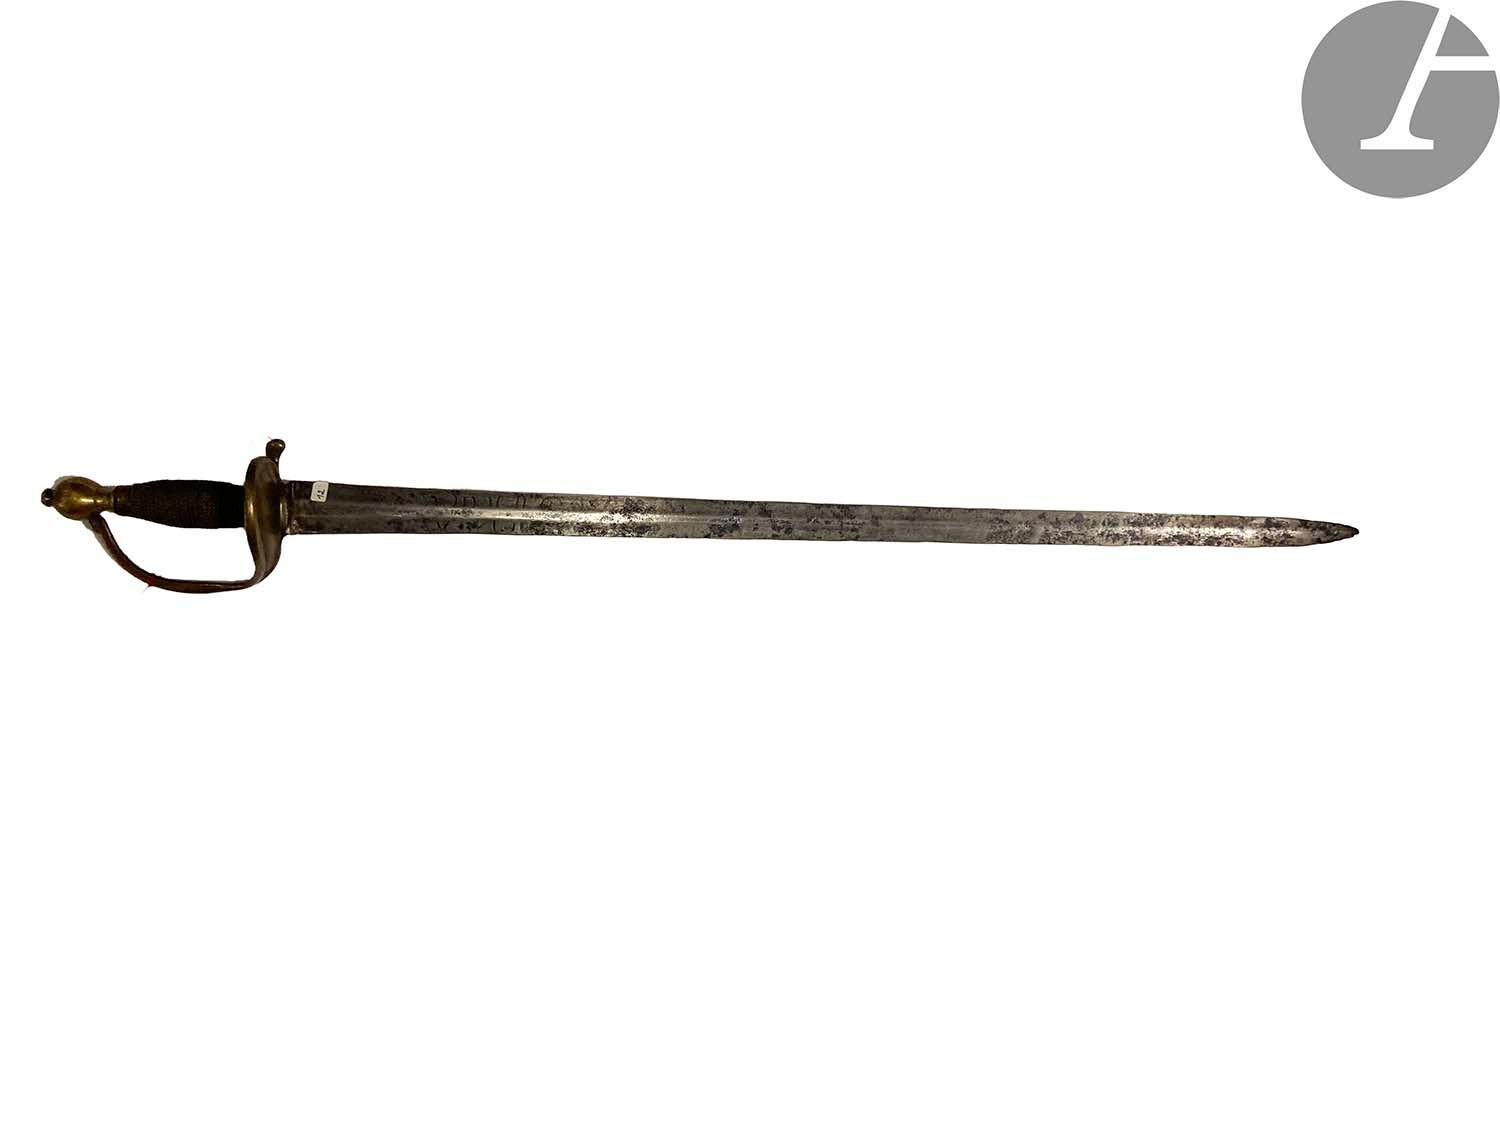 Null 强大的骑兵剑。
带水印的保险丝。黄铜安装。单枝防护和半壳。大直刀上刻有 "Vive le Roi"（部分褪色）。
E.M. 大约1730年。